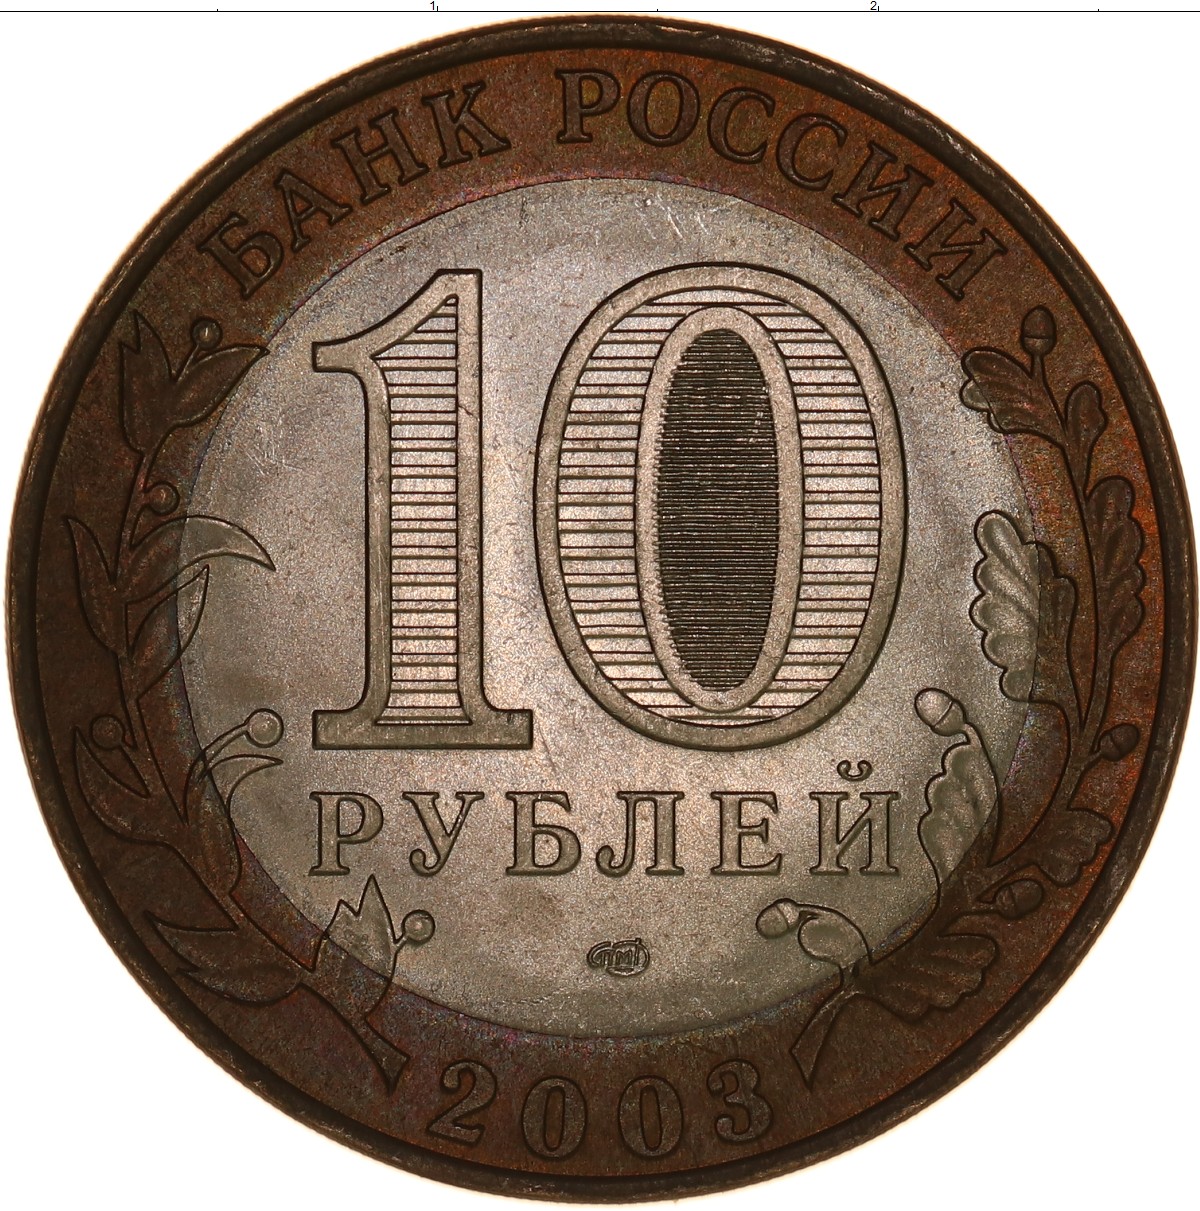 10 рублей биметалл список всех монет. 10 Р Биметалл. Биметаллические монеты 10 рублей. Монета 10 рублей биметаллическая 2011 года. Монета 10 рублей Биметалл изображения.